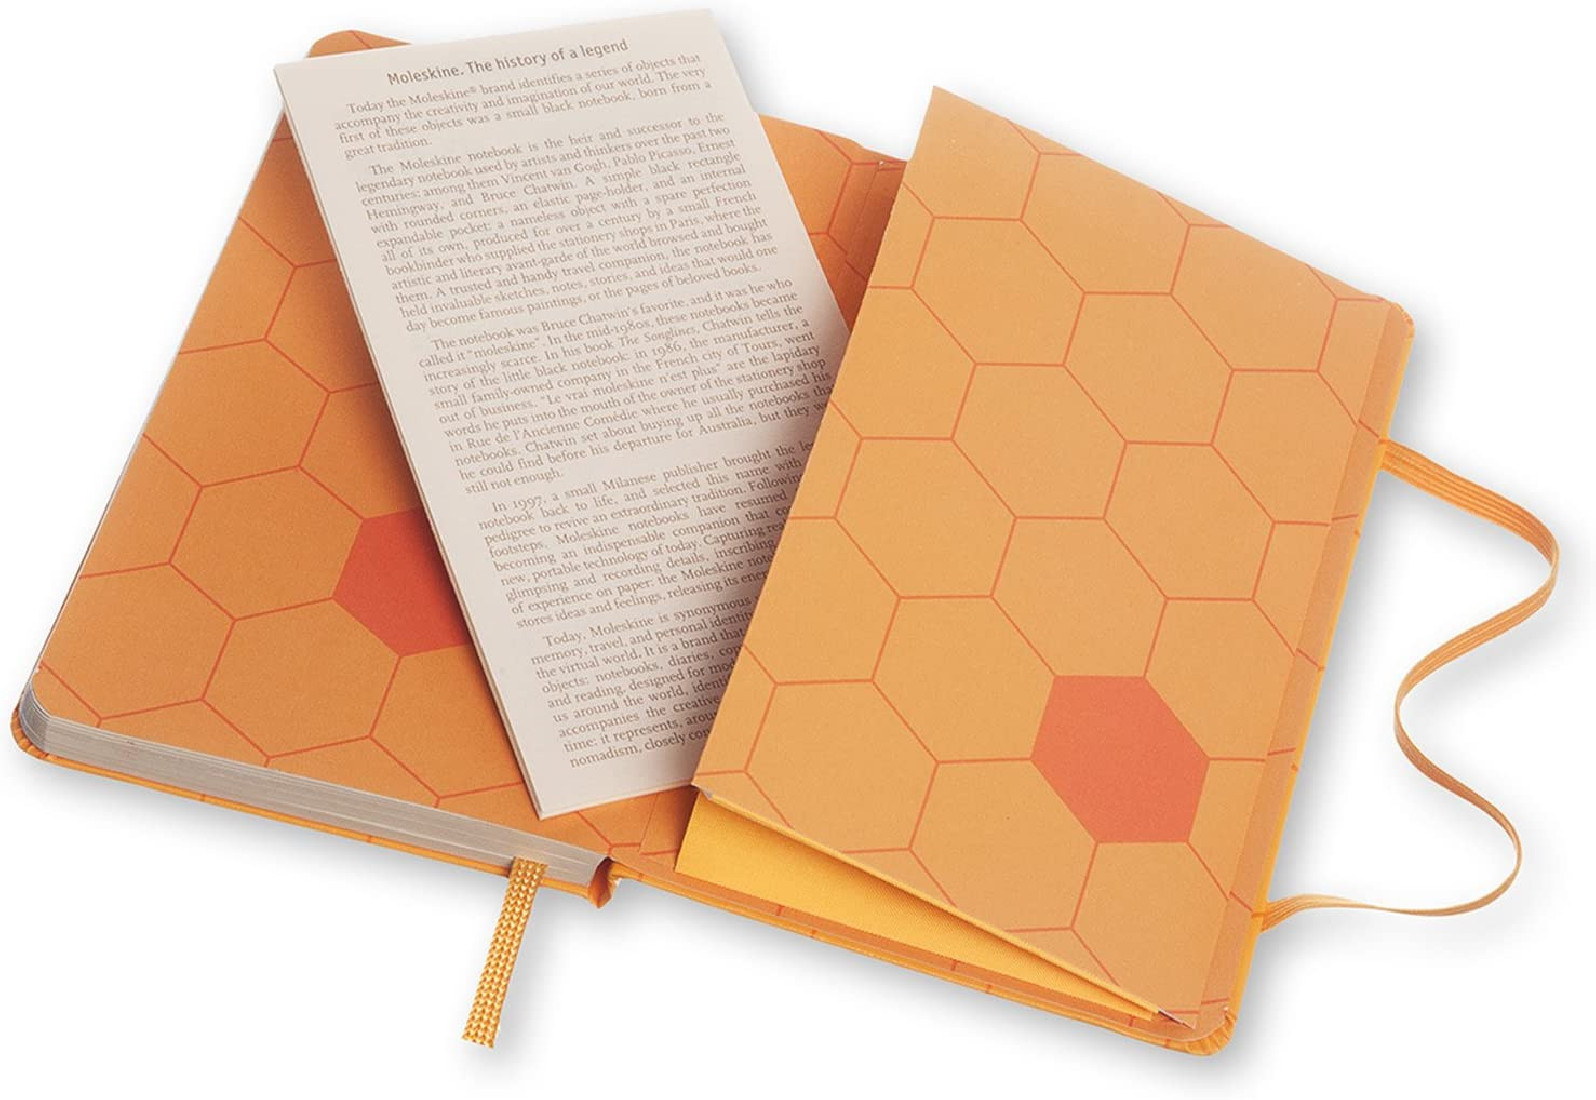 Notebook Decorated Honey Yellow Pocket 9x14 Ruled Moleskine